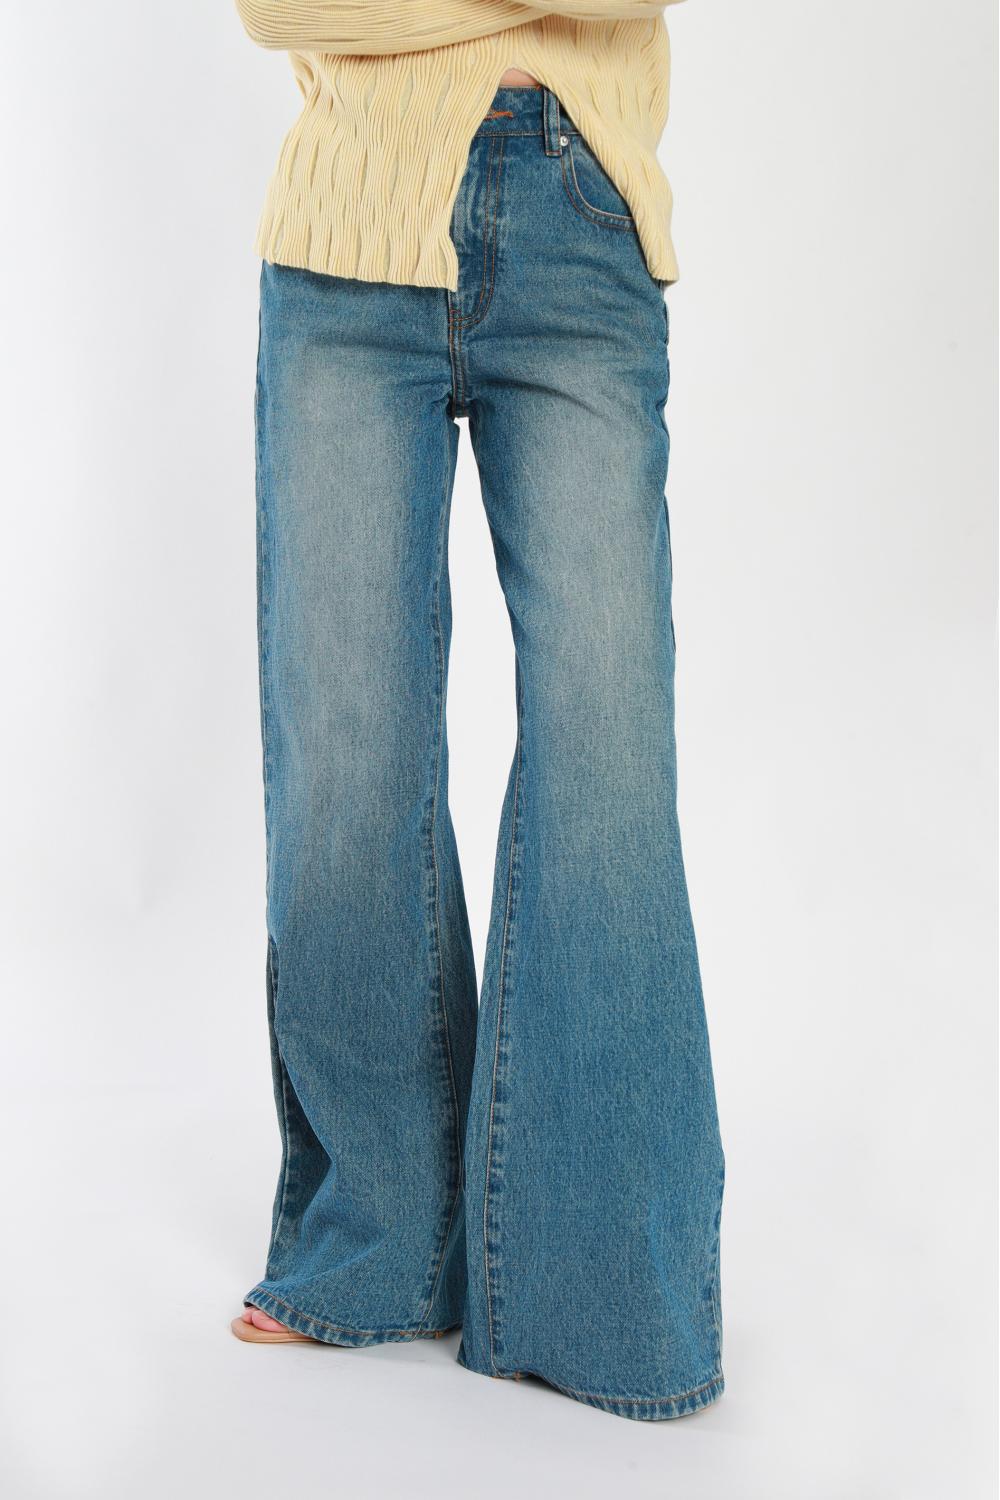 Hellblaue Weitbein-Jeans